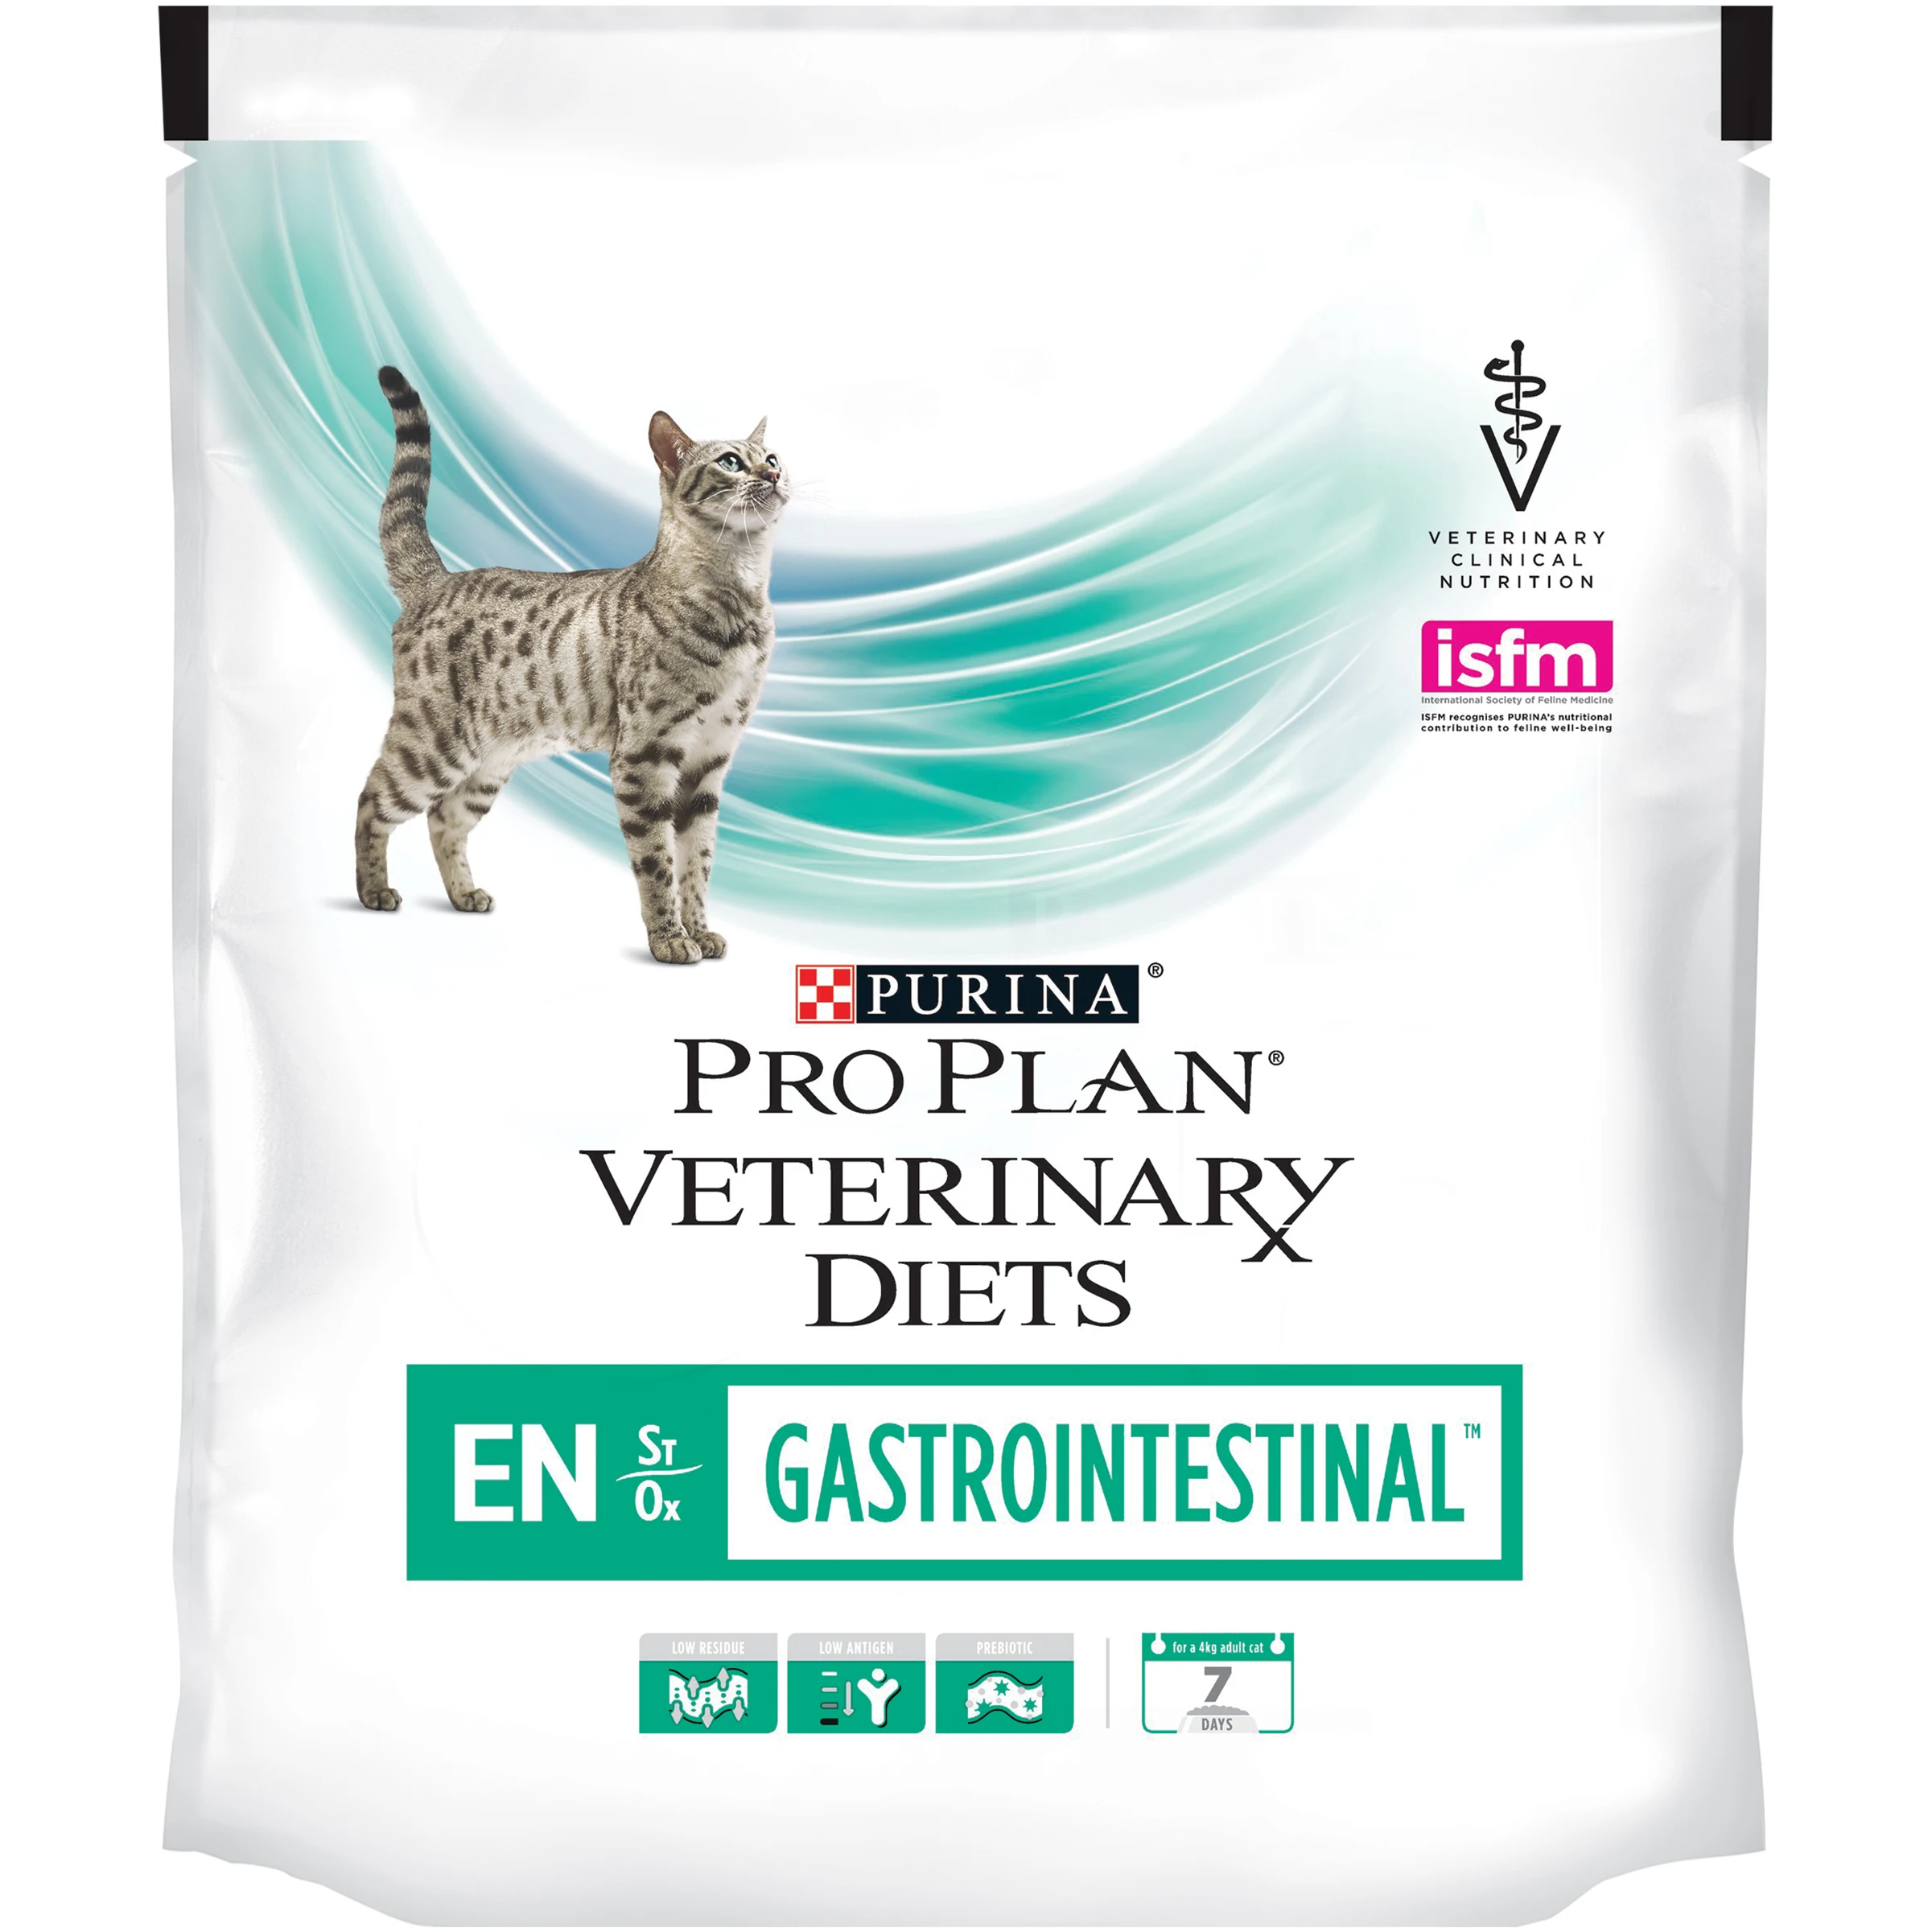 Сухой корм Pro Plan Veterinary diets EN корм для кошек при расстройствах пищеварения, Пакет, 400 г